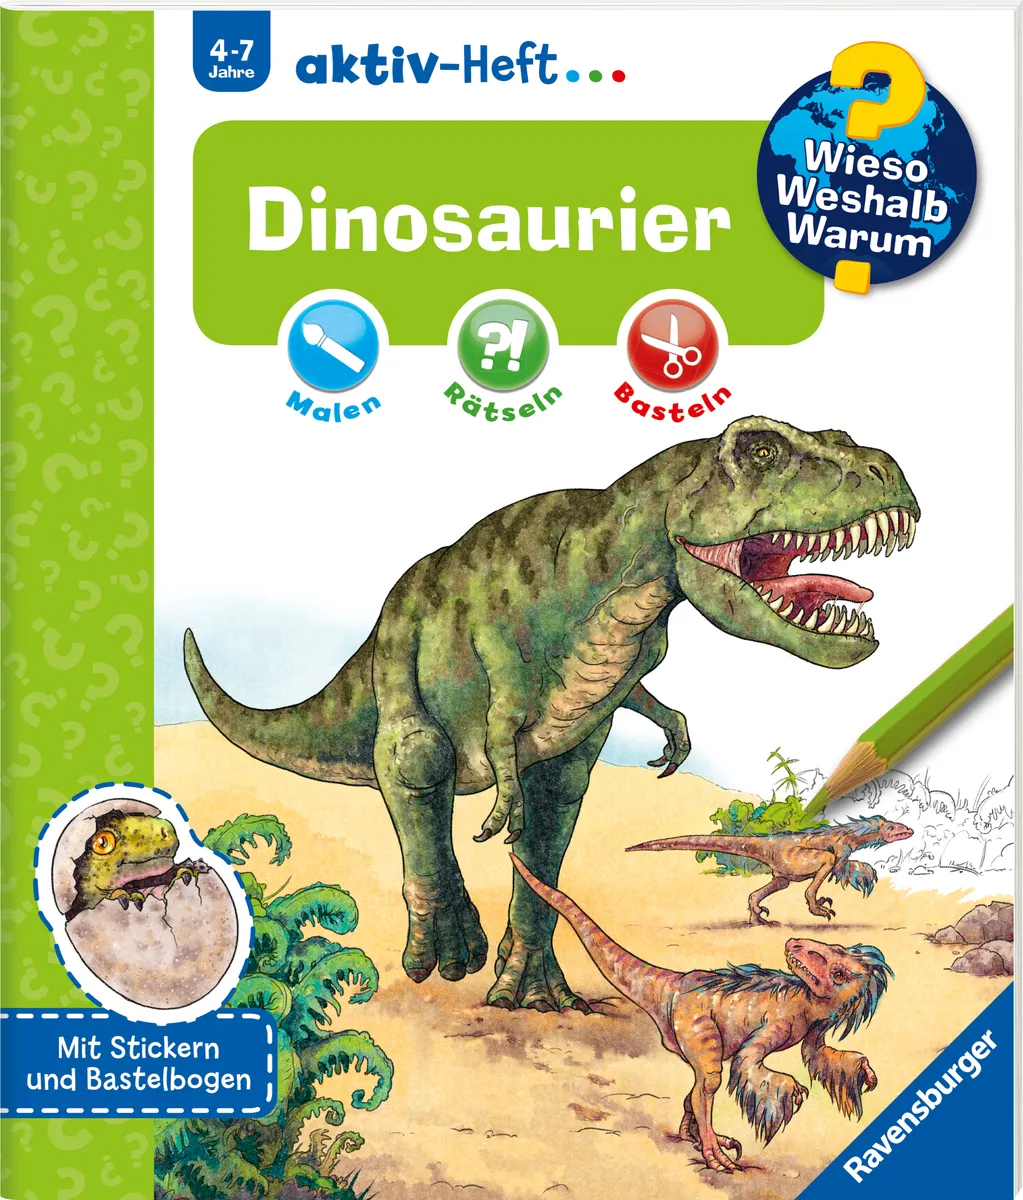 Dinosaurier: malen rätseln basteln; [mit Stickern u. Bastelbogen]